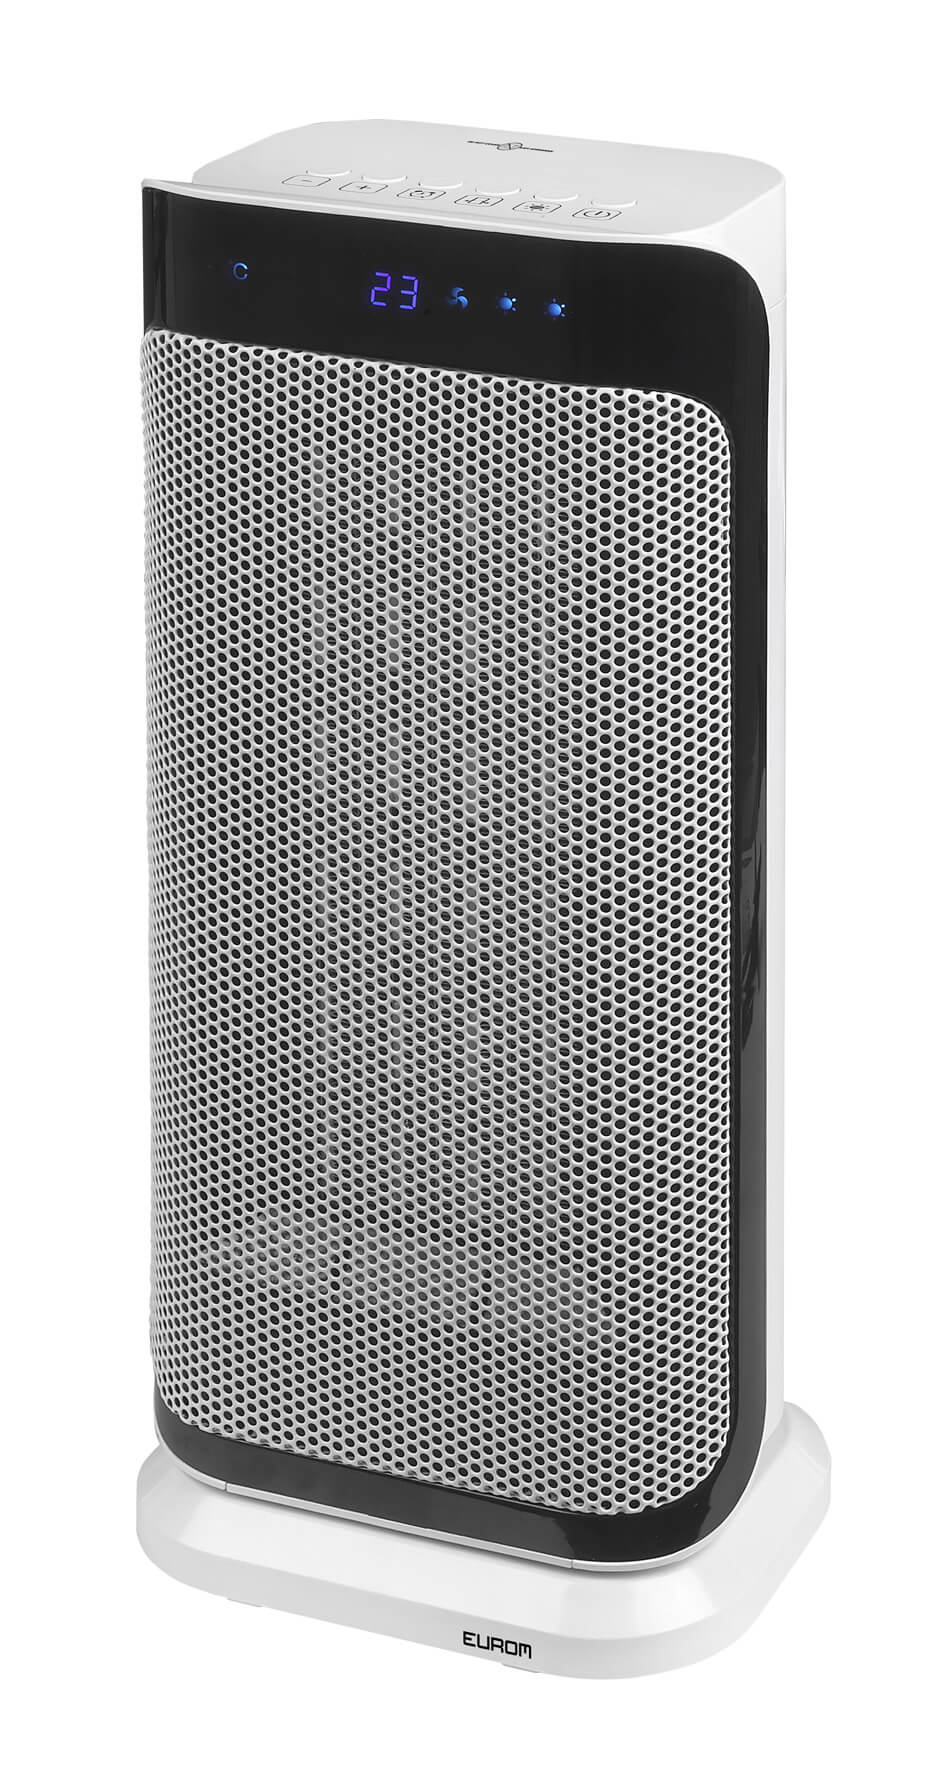 Eurom Sub-heat 2000 is een compacte keramische kachel met een maximaal vermogen van 2000 Watt